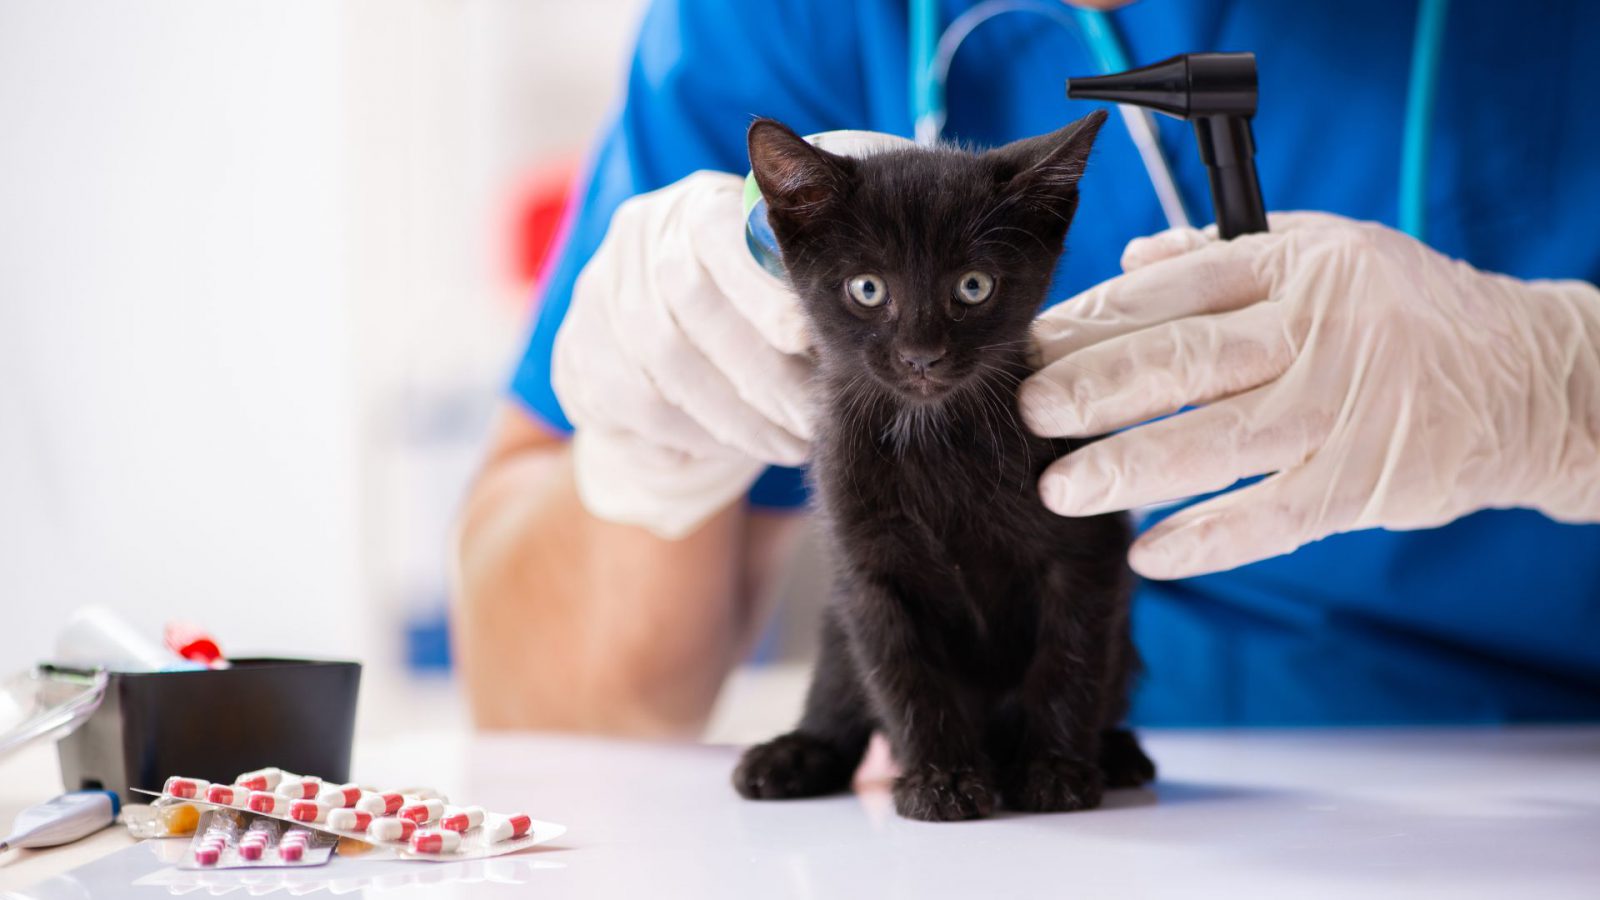 Veterinaria cuidando y protegiendo a un gato que ha sufrido lesiones